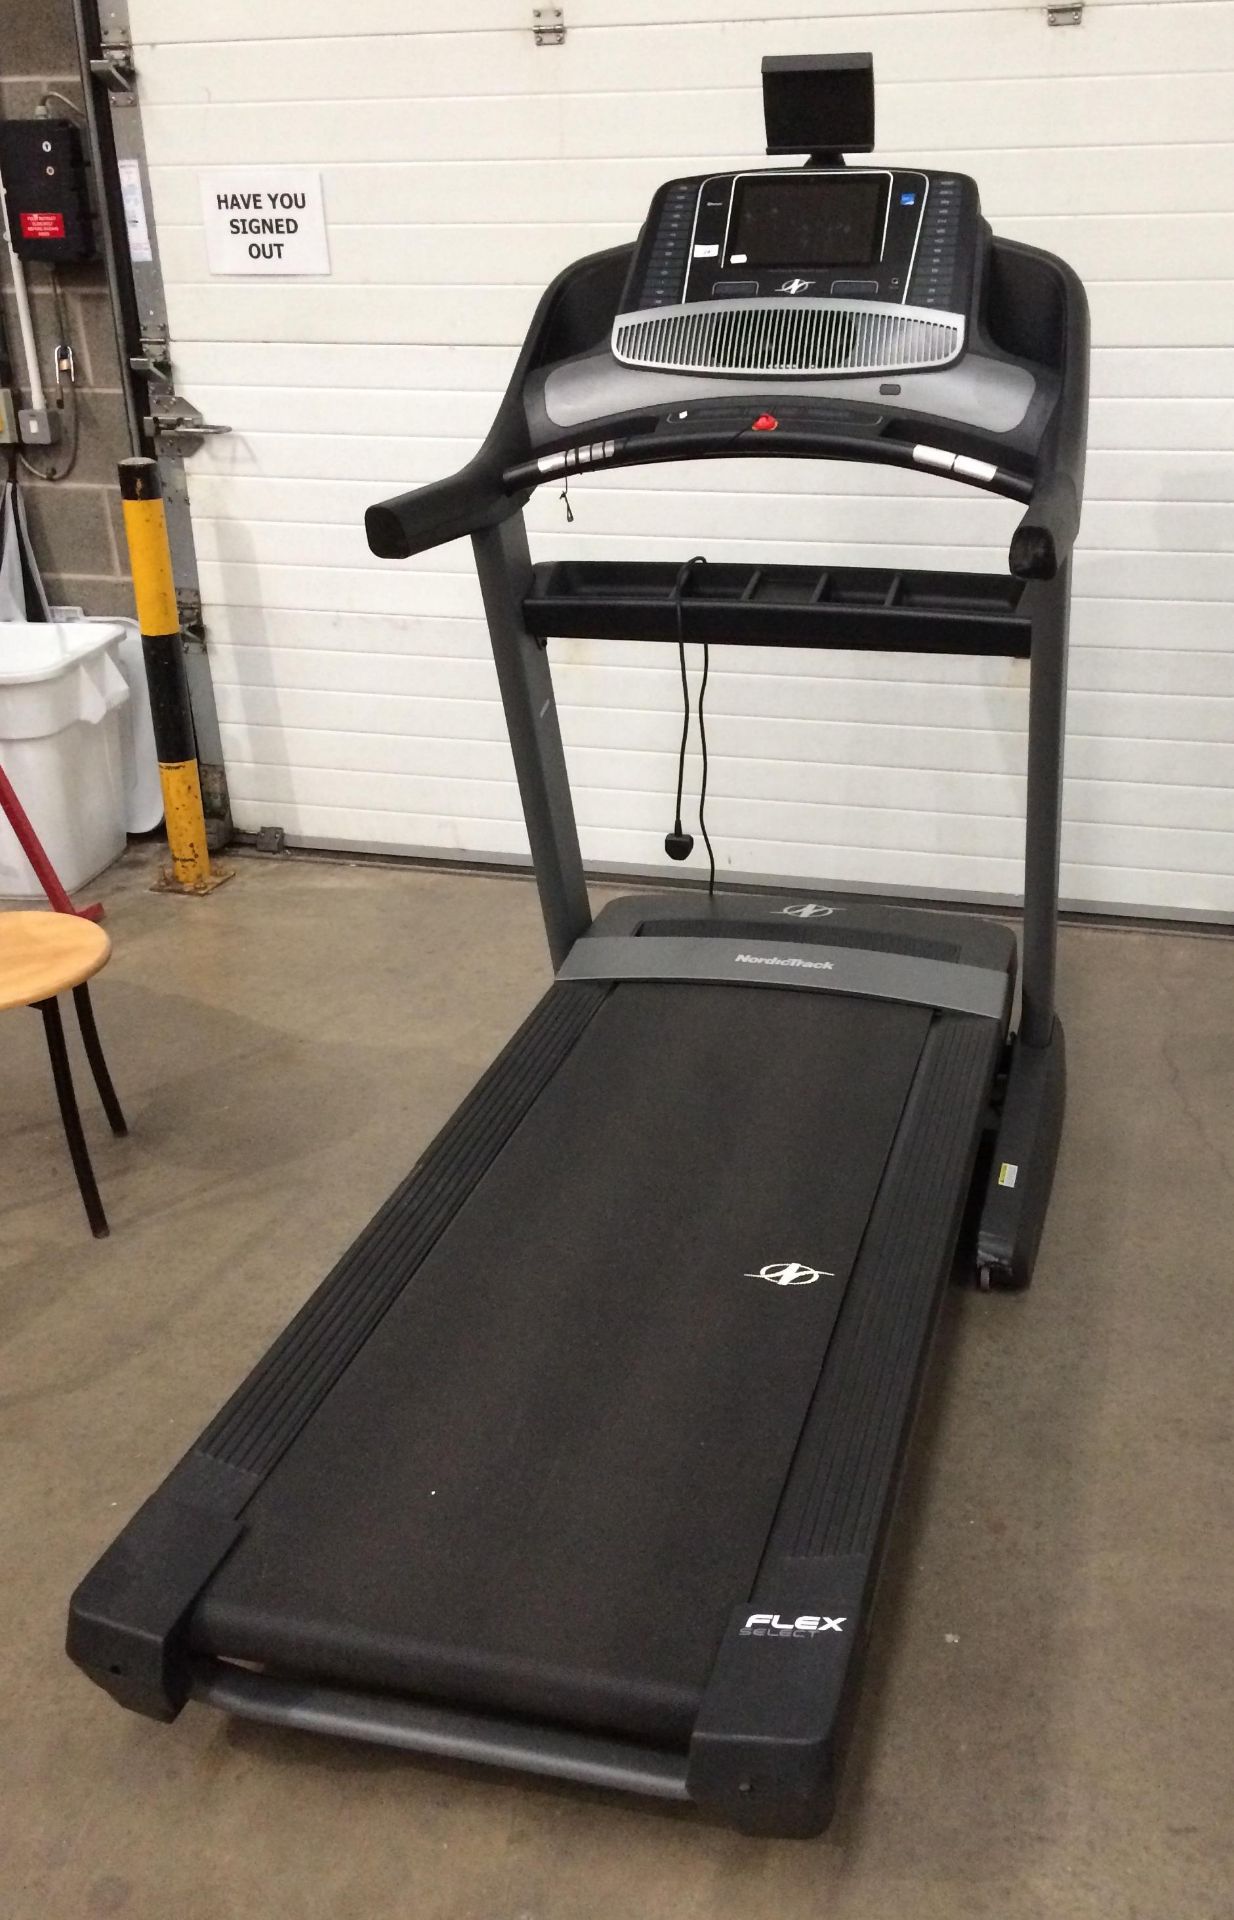 A Nordic Track Commercial 2450 treadmill model no NETL24717.